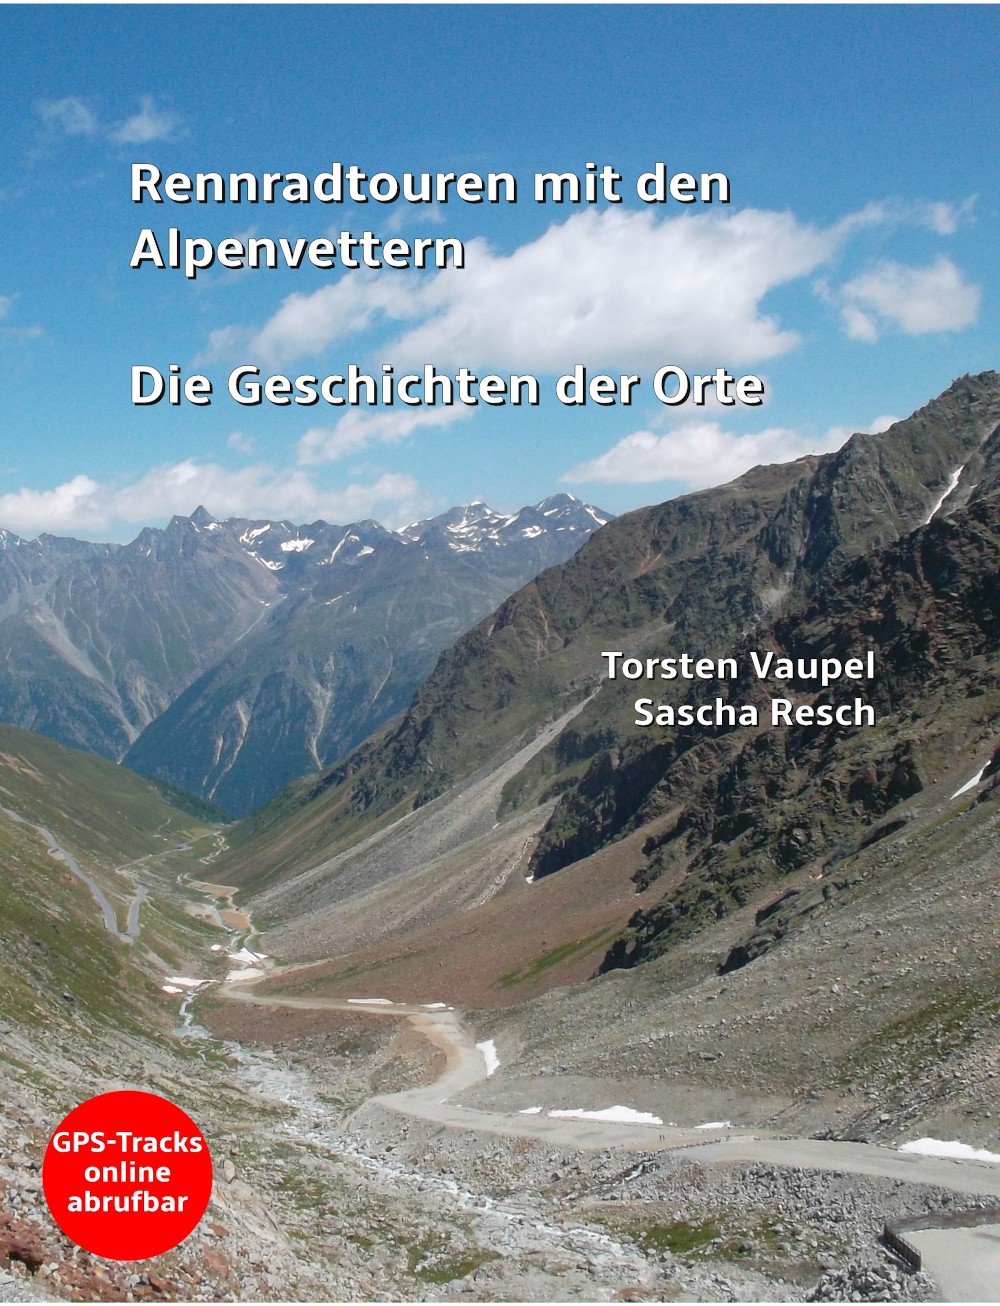 Alpenvettern als Buch: Die Geschichten der Orte